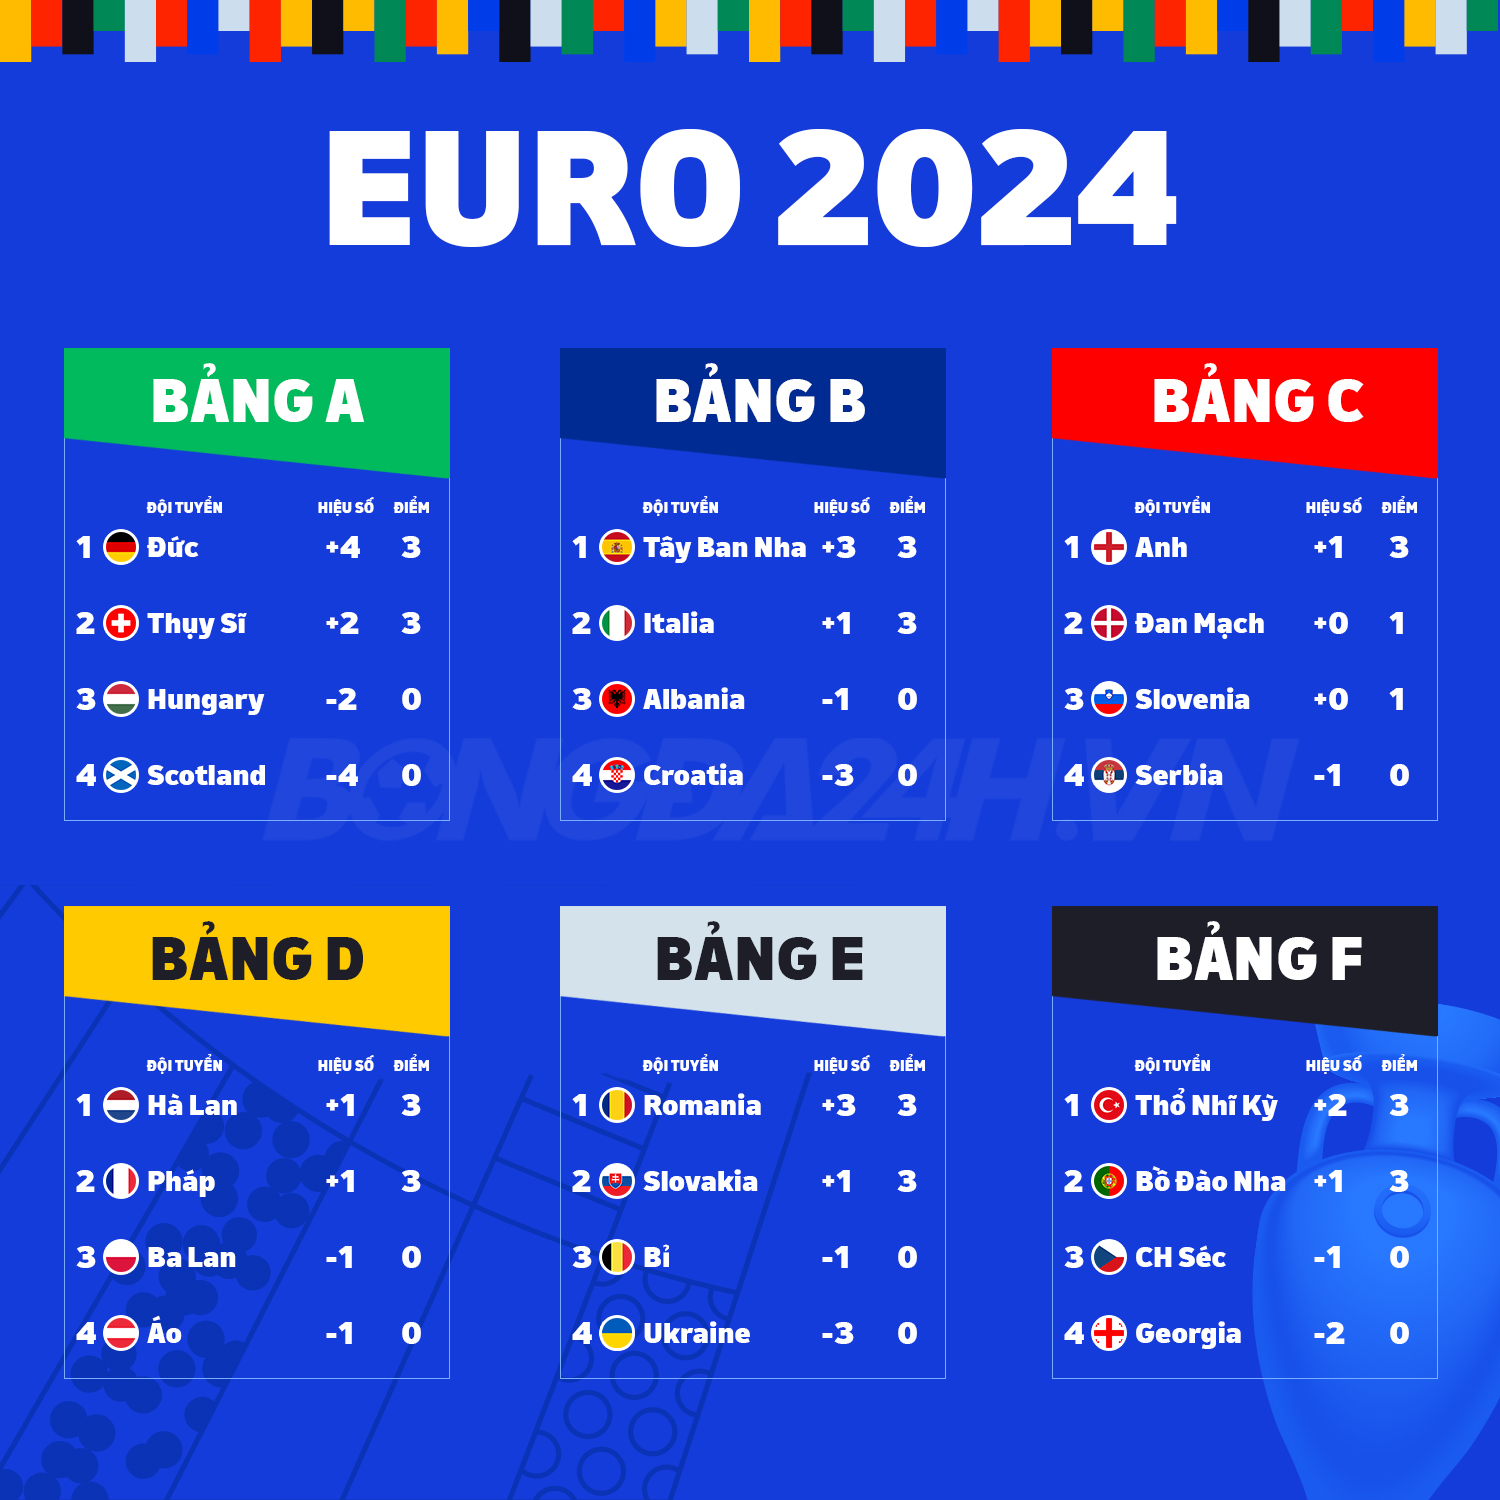 Tổng kết lượt trận đầu tiên EURO 2024 Không ai qua chủ nhà 3